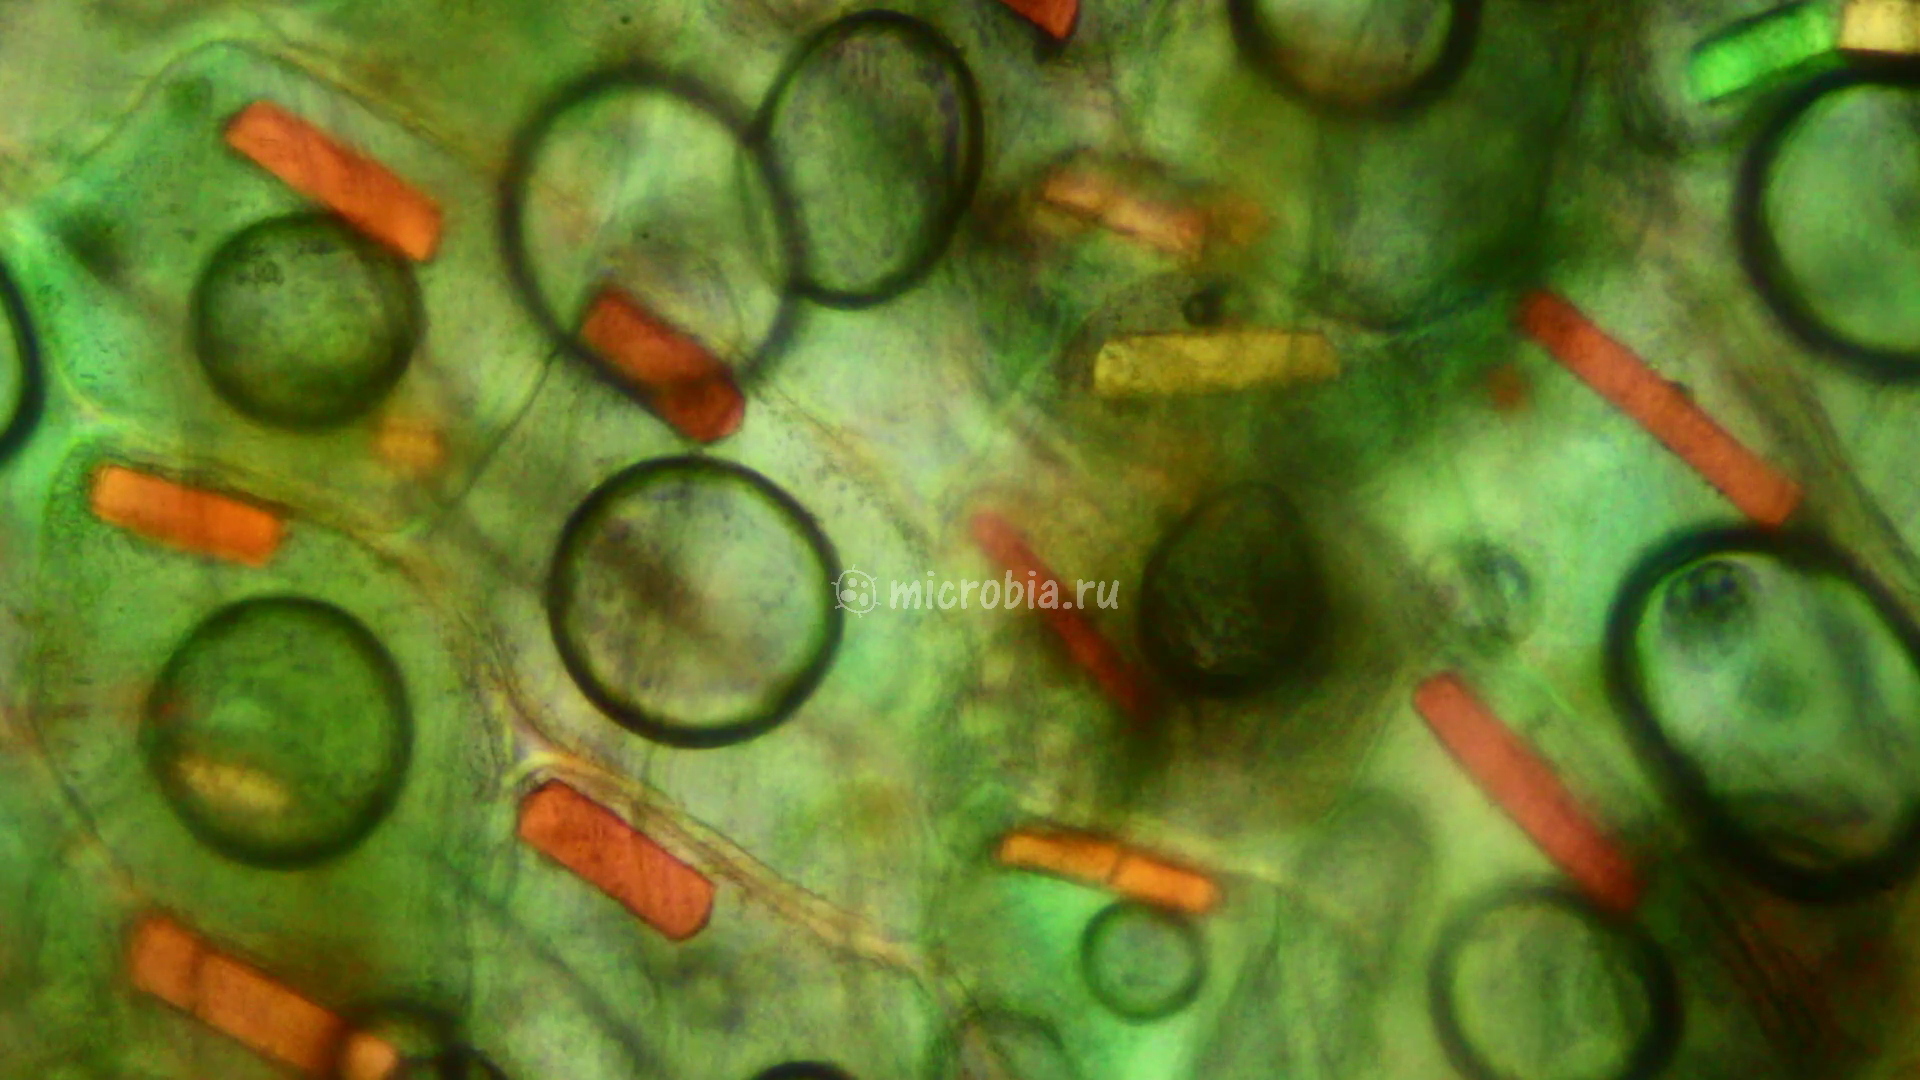 кристаллы в клетках шелухи лука под микроскопом в поляризованном свете